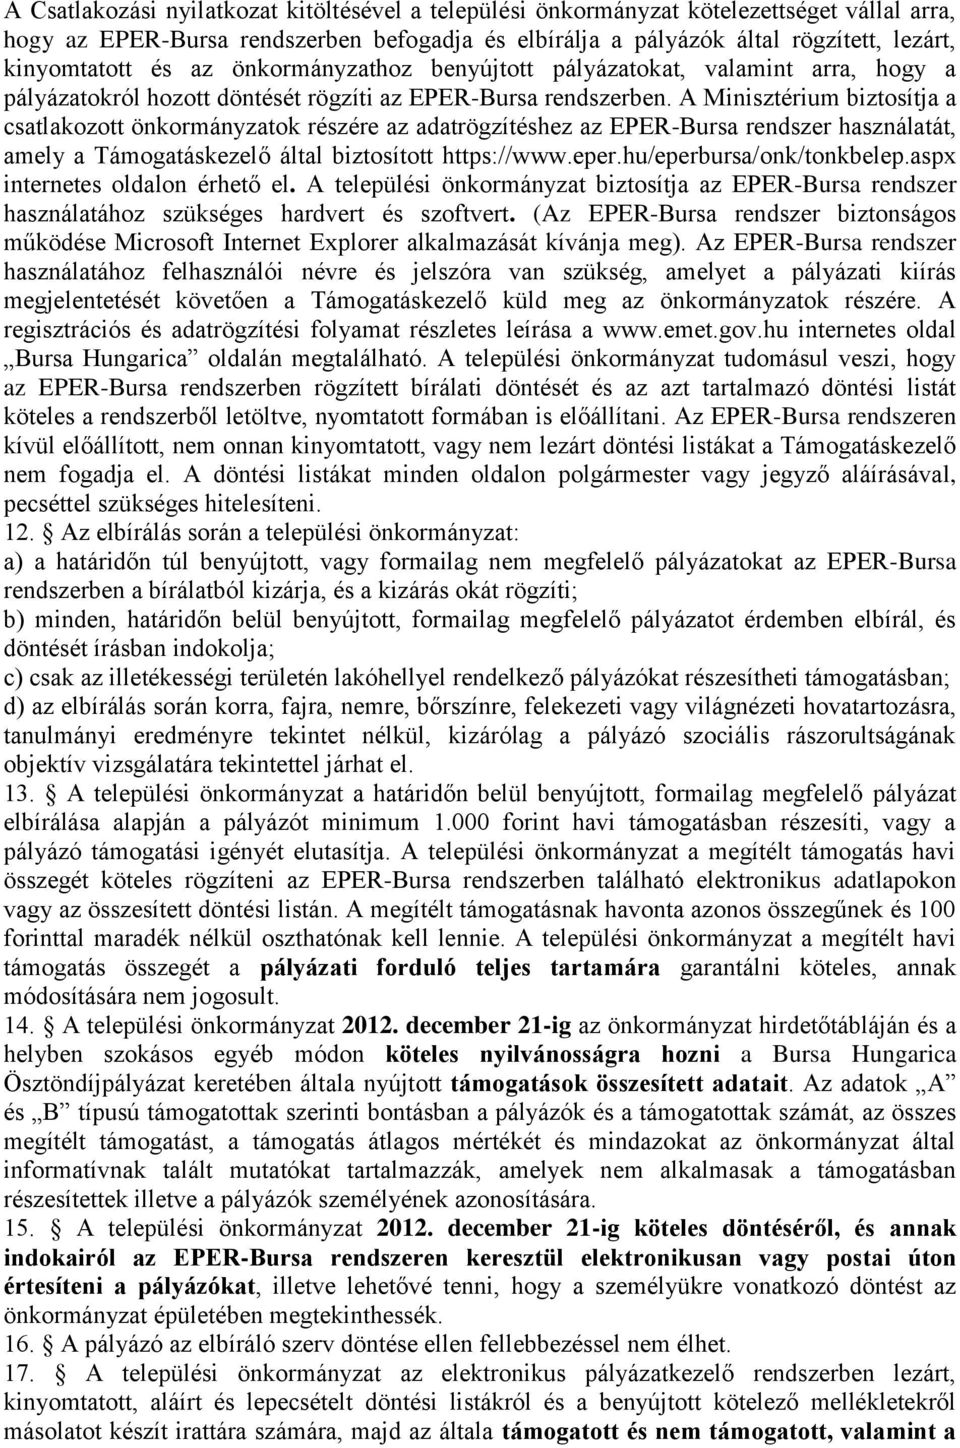 A Minisztérium biztosítja a csatlakozott önkormányzatok részére az adatrögzítéshez az EPER-Bursa rendszer használatát, amely a Támogatáskezelő által biztosított https://www.eper.